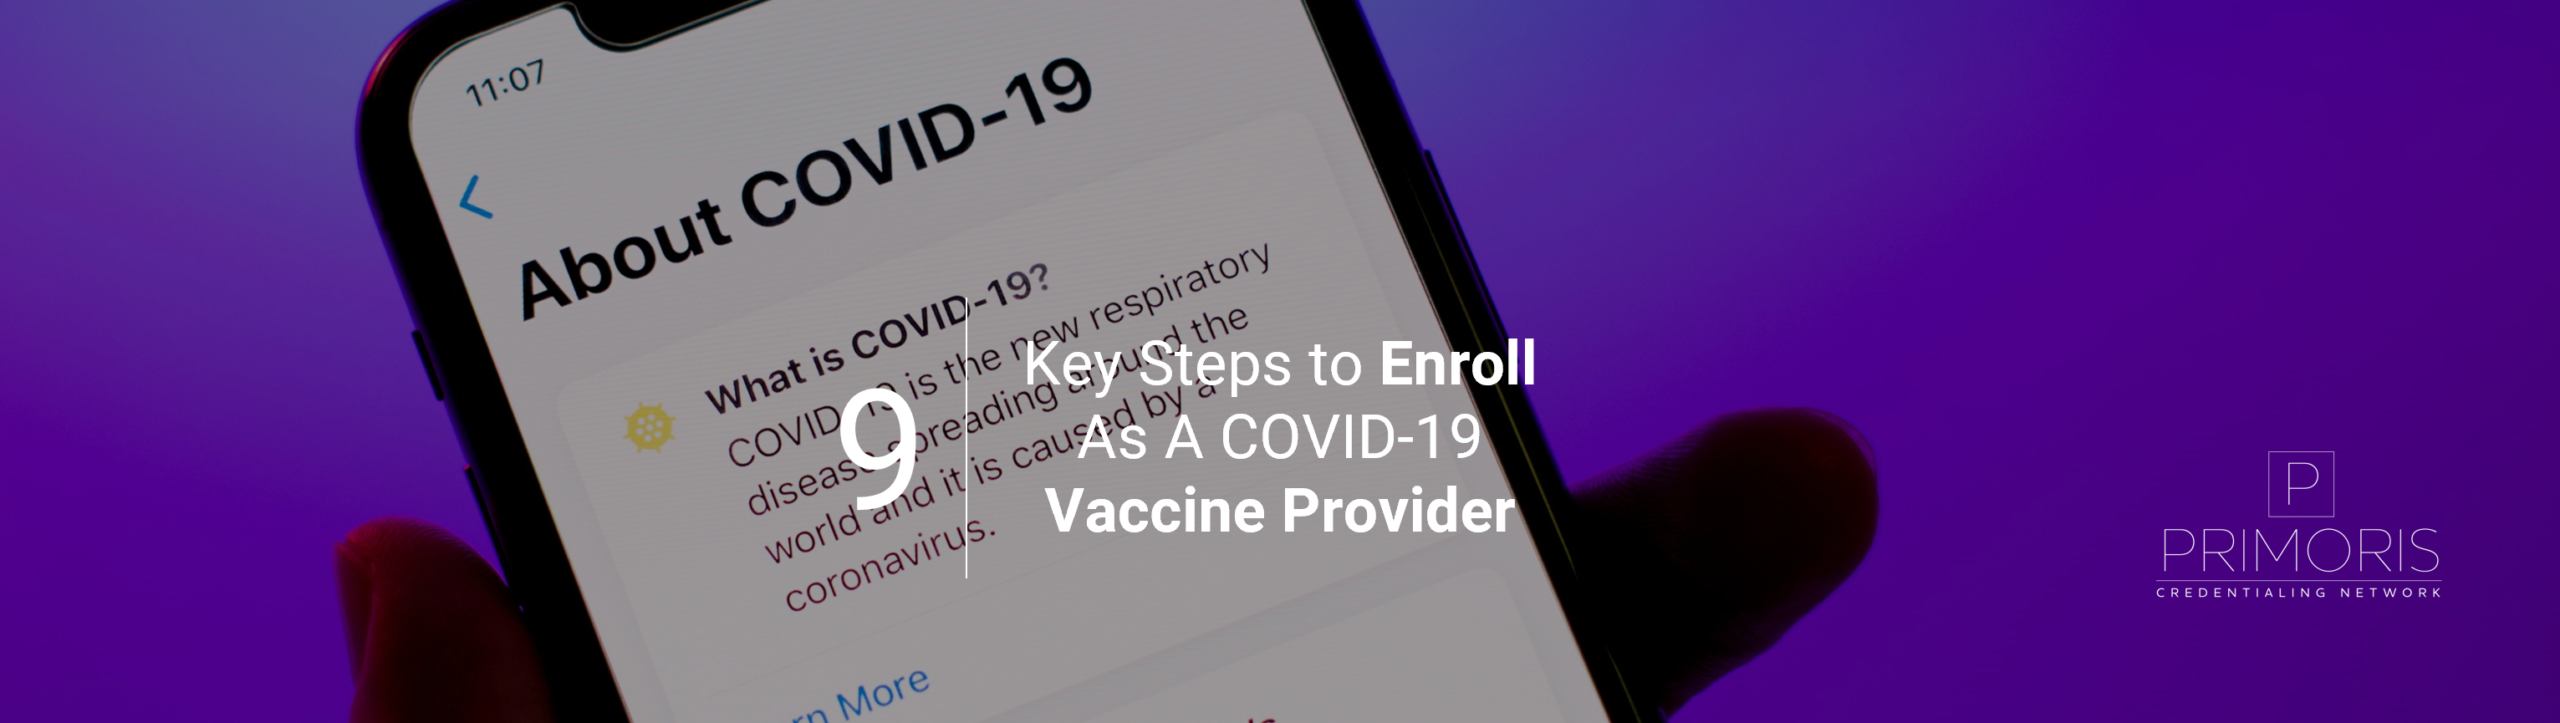 COVID-19 Vaccine Provider